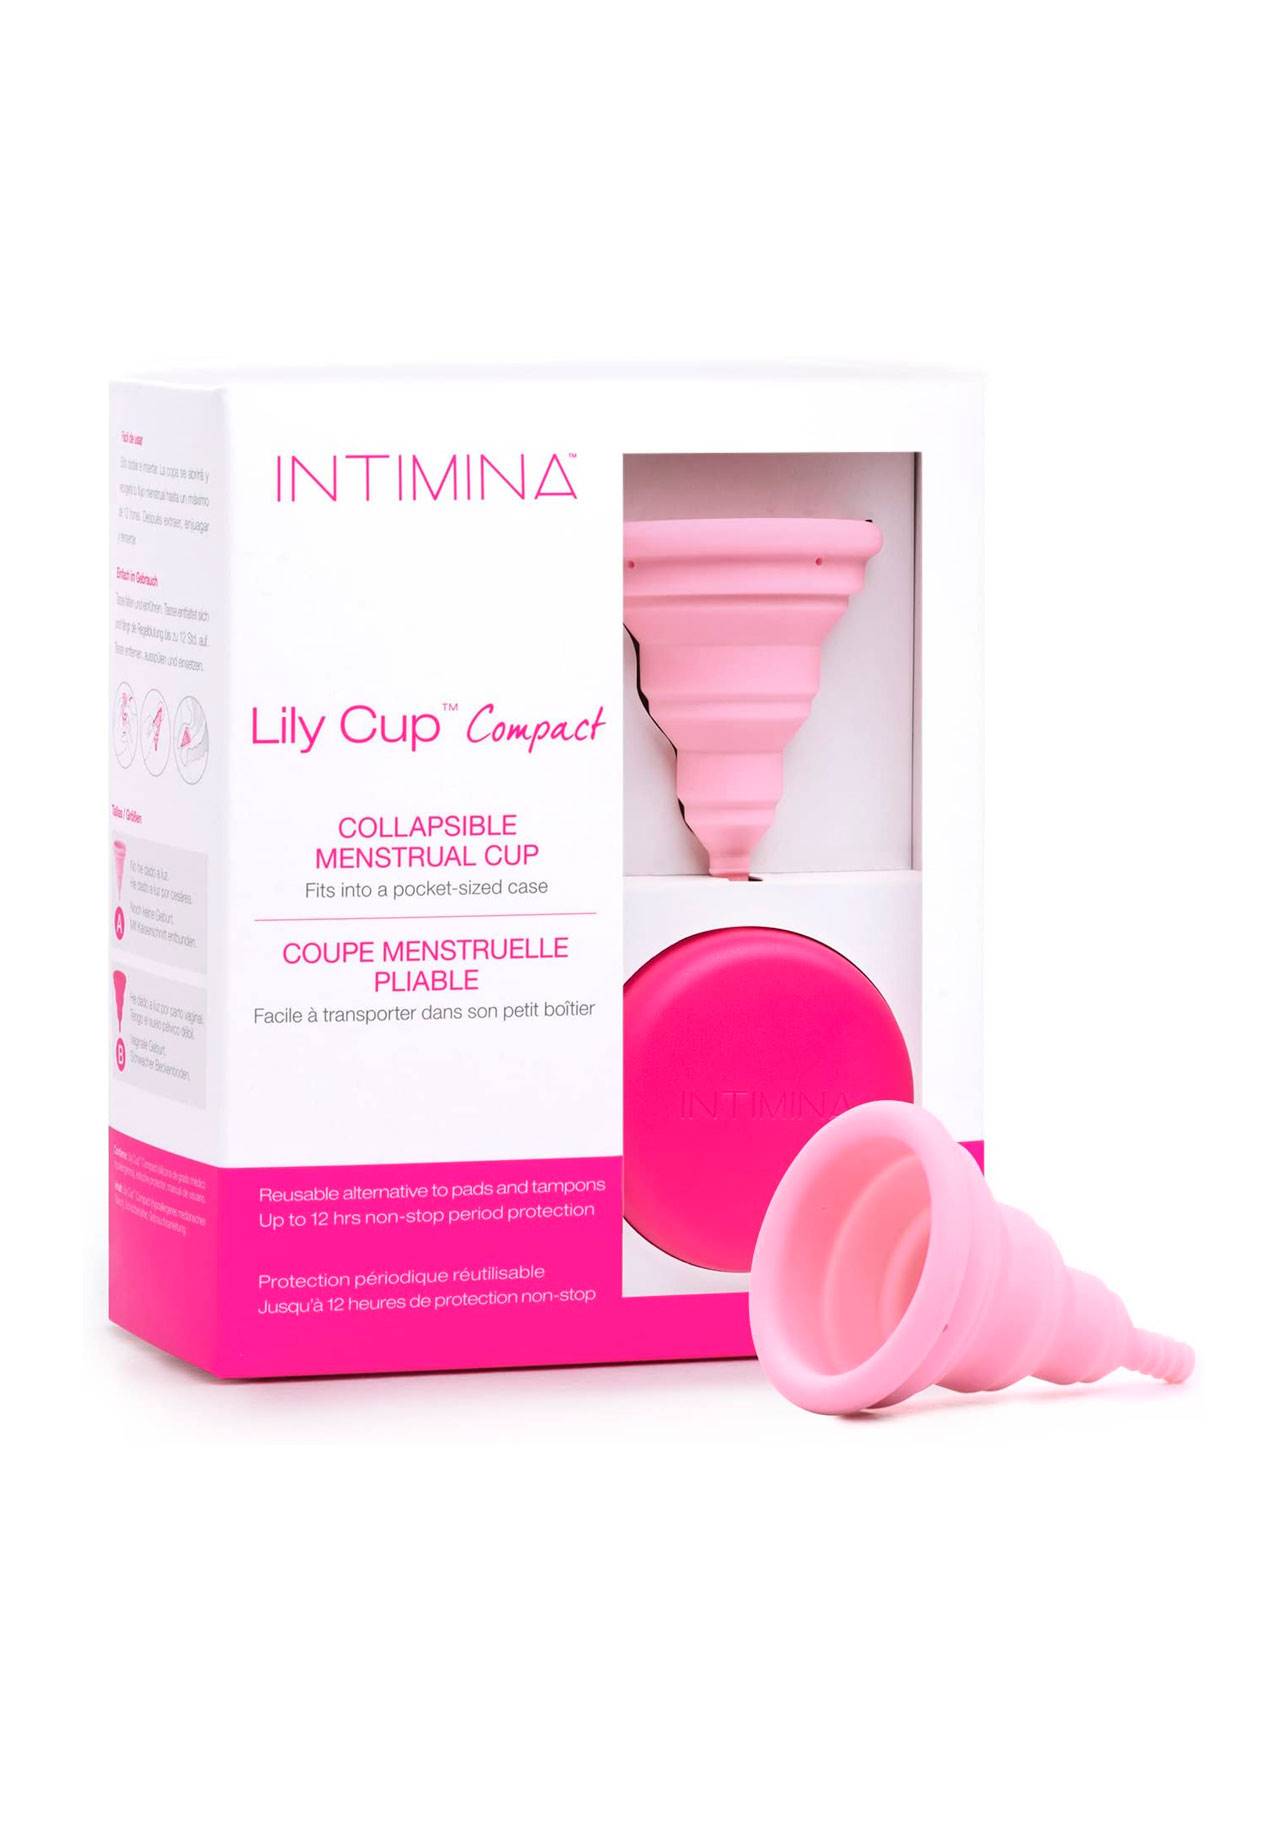 Lily Cup Compact, la copa plegable y con estuche de Intimina